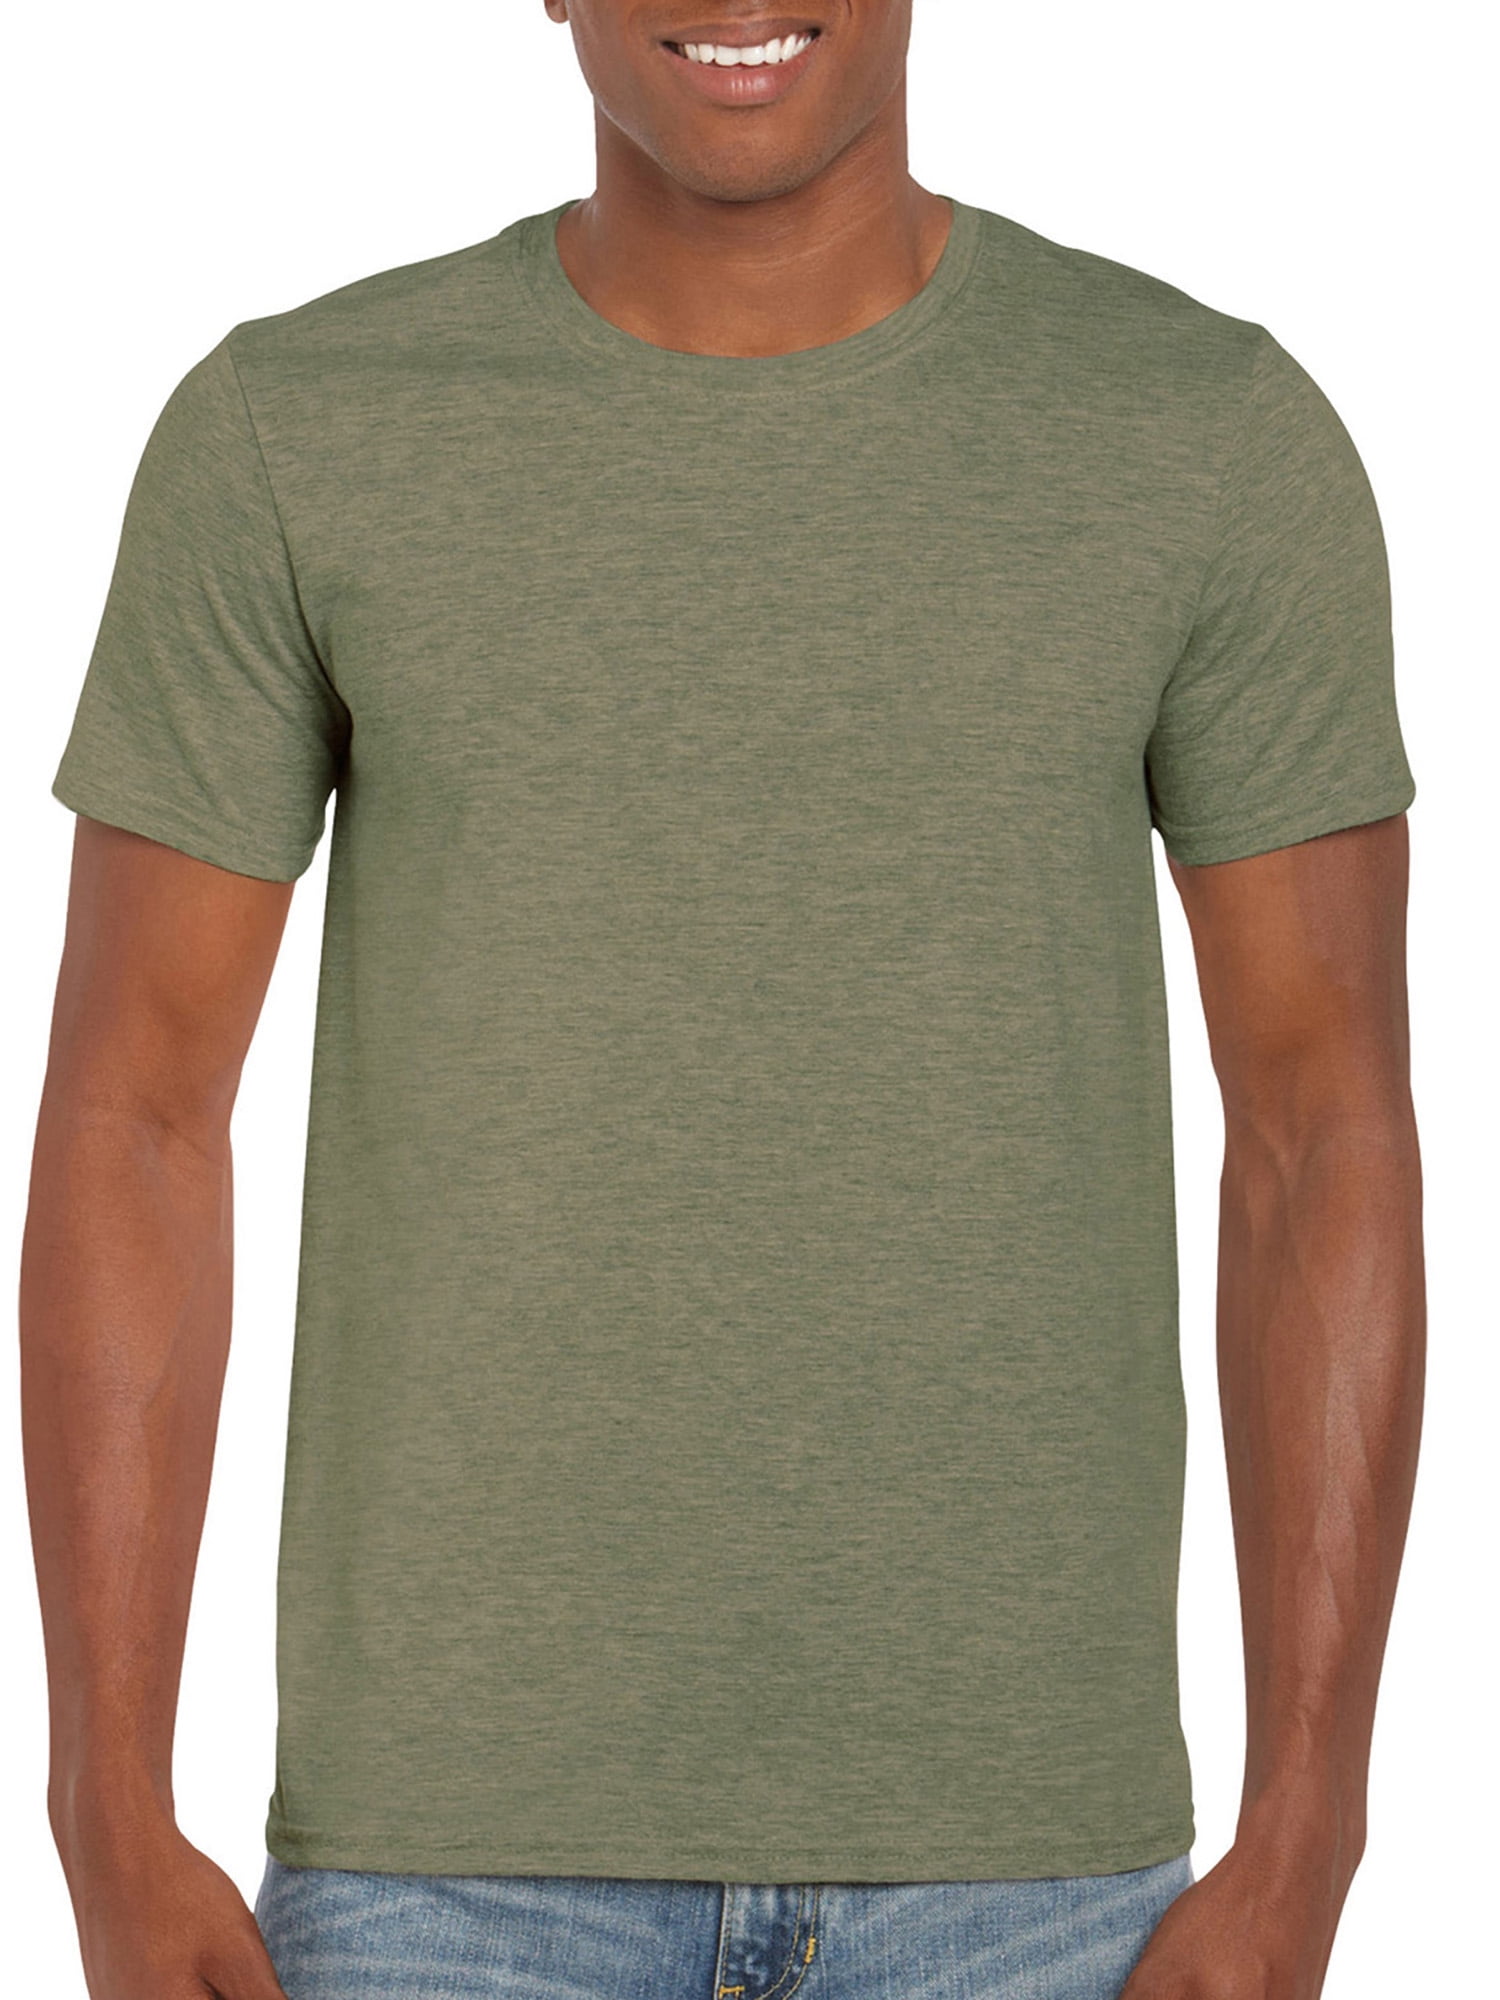 Gildan Men's Softstyle Fitted Cotton Short Sleeve T-shirt - Walmart.com